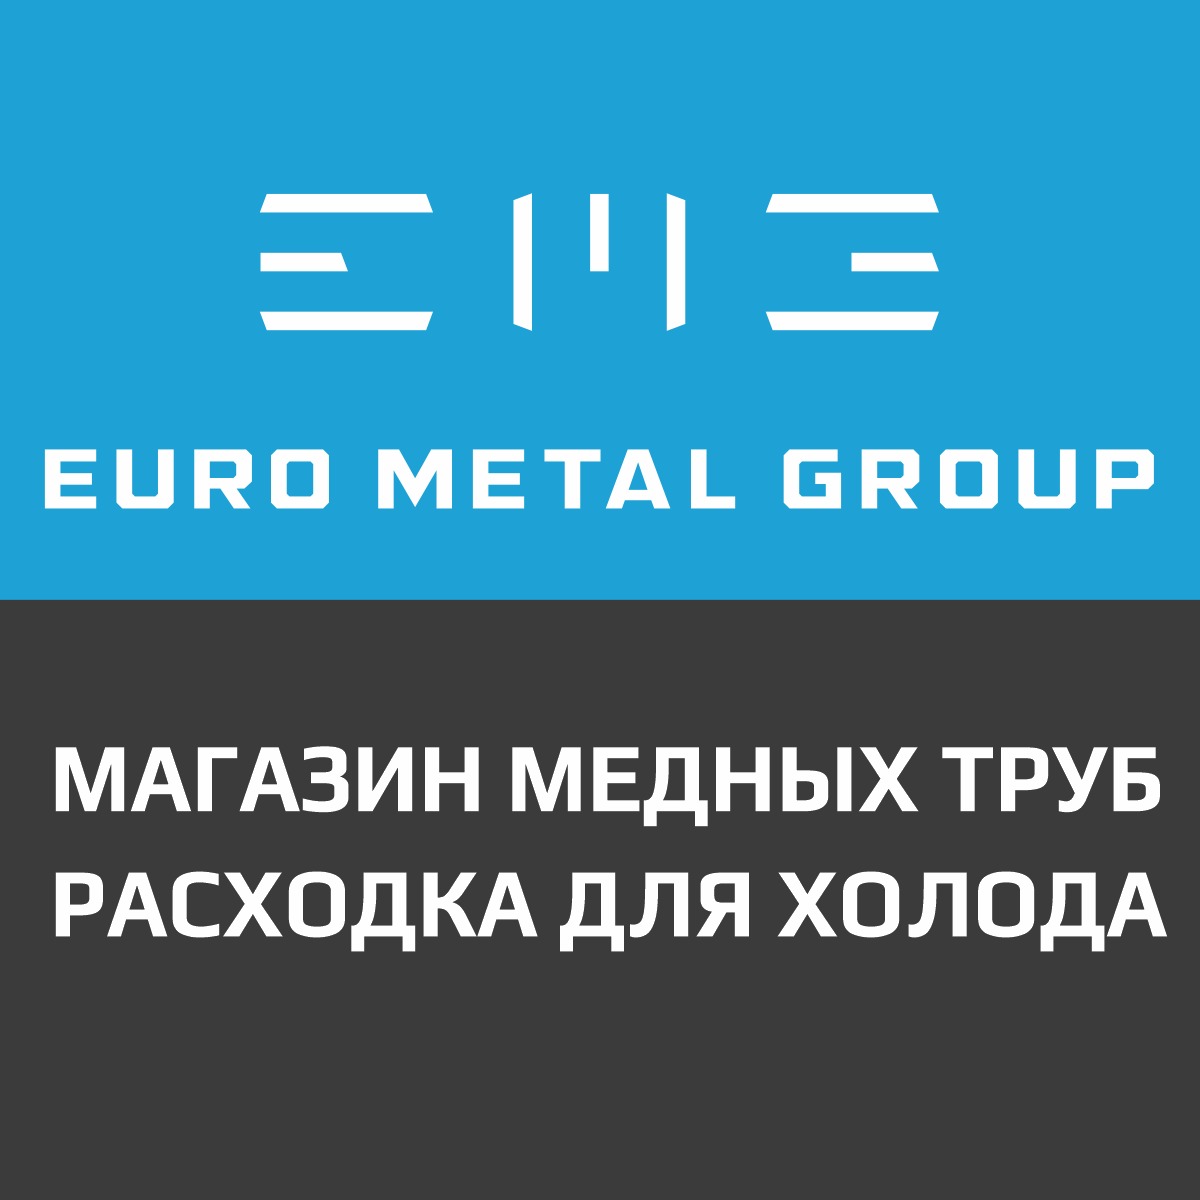 Евро метал групп. Еврометалл групп. Еврометалл групп Самара. Евро металл групп магазин. Еврометалл групп карта.